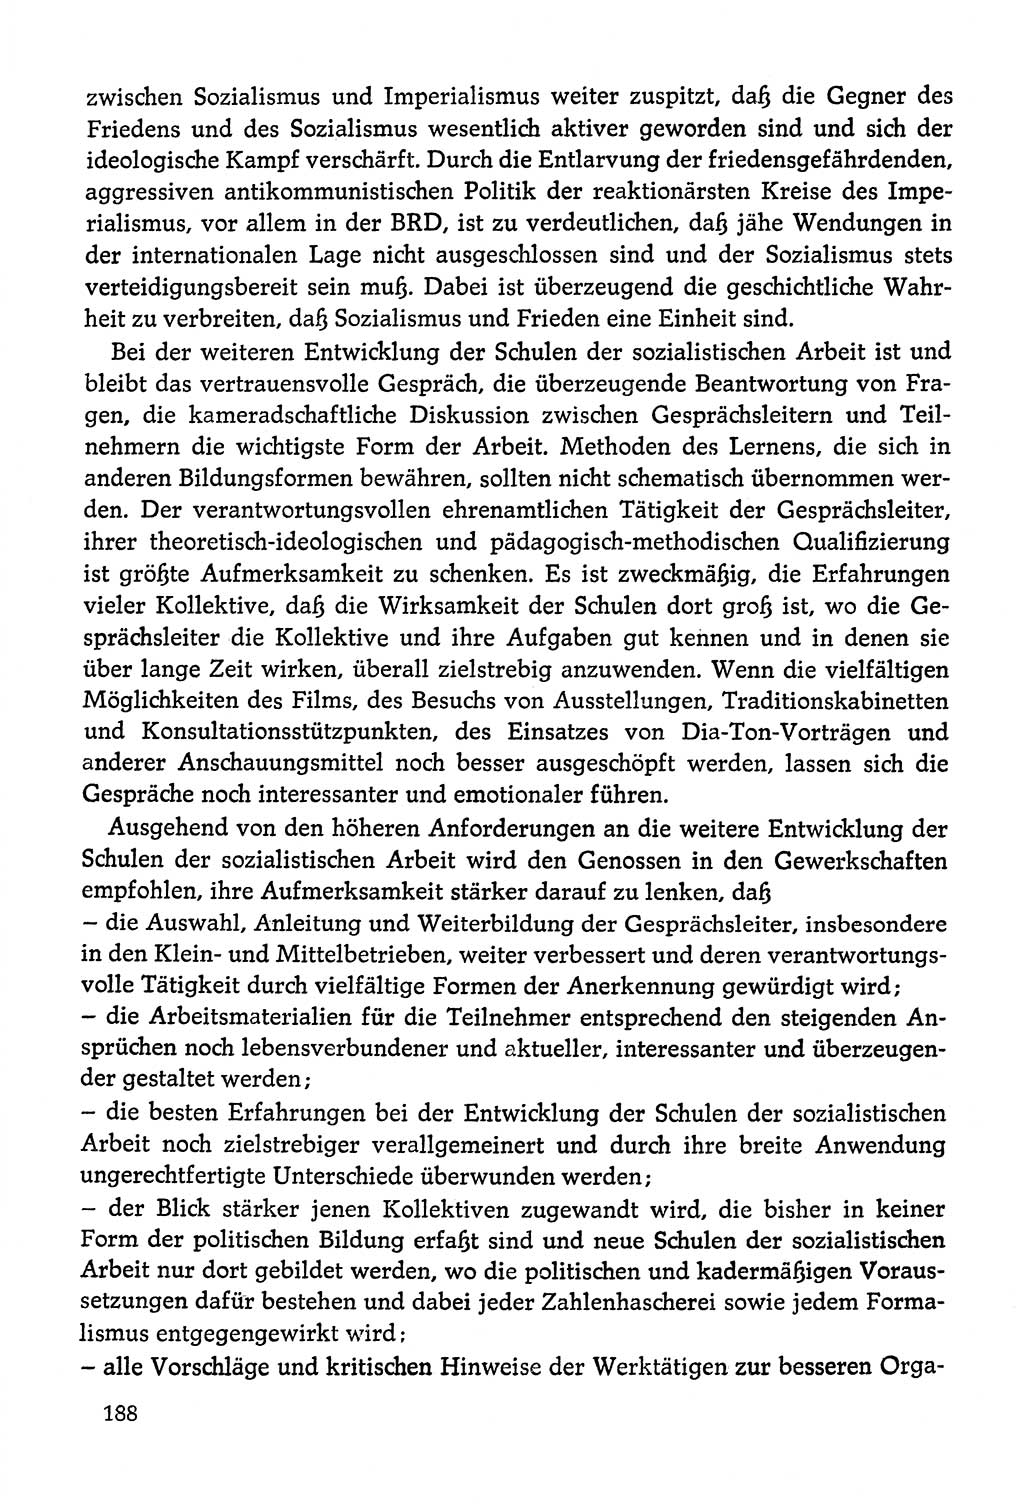 Dokumente der Sozialistischen Einheitspartei Deutschlands (SED) [Deutsche Demokratische Republik (DDR)] 1978-1979, Seite 188 (Dok. SED DDR 1978-1979, S. 188)